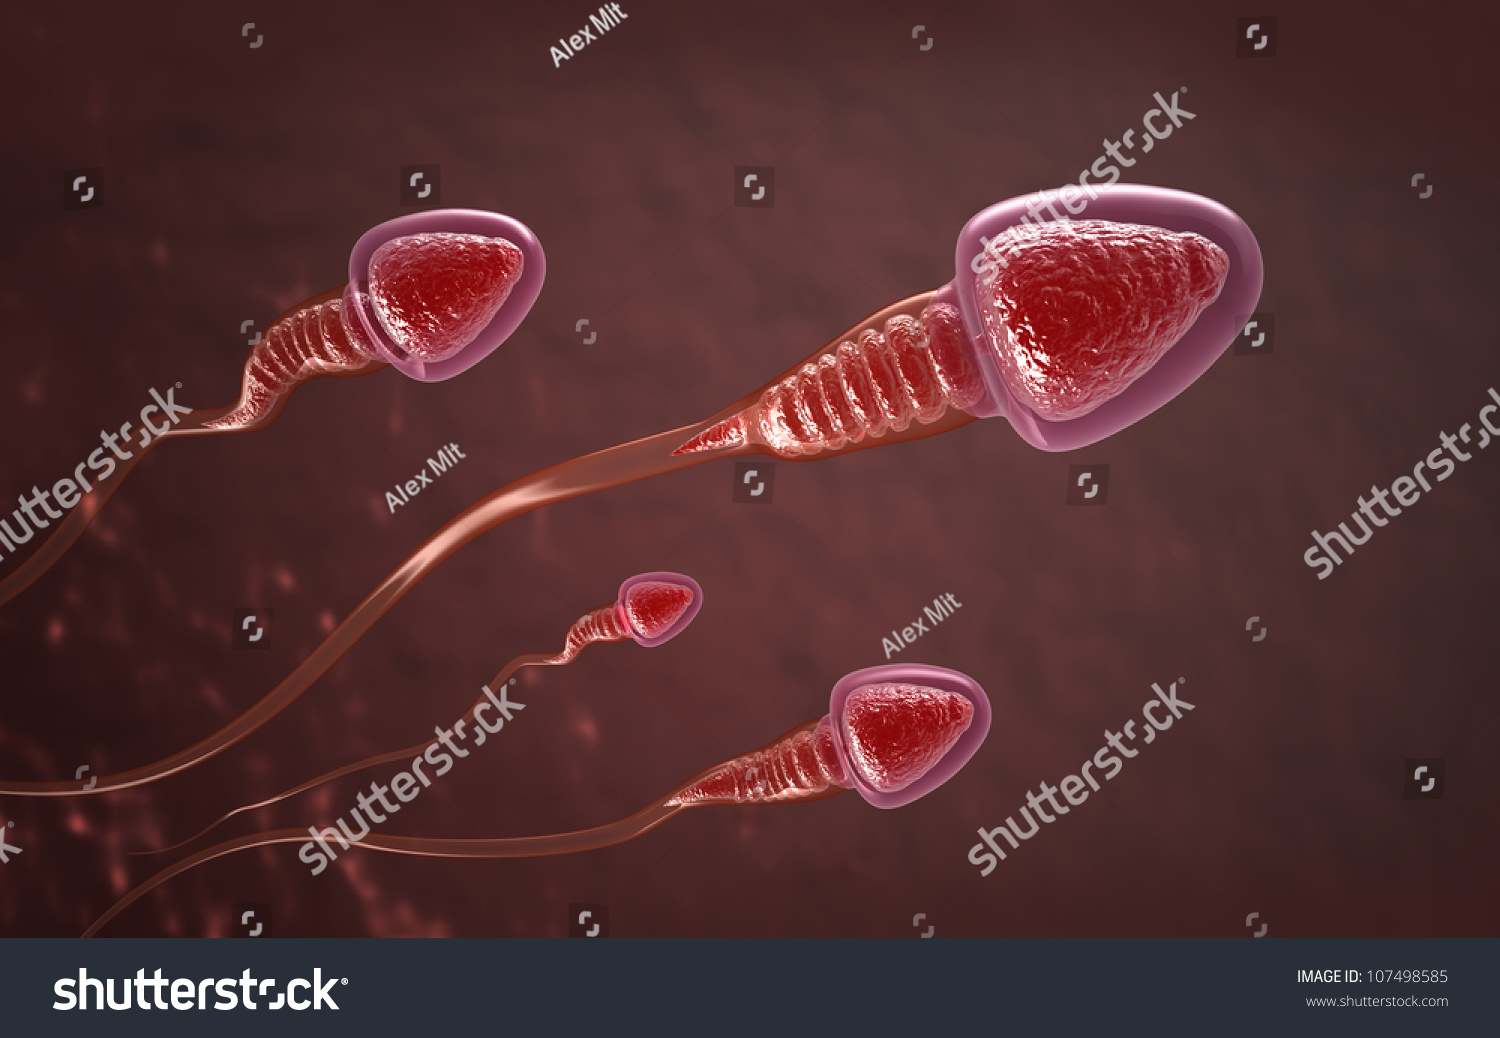 можно ли забеременеть при лейкоцитах в сперме фото 28